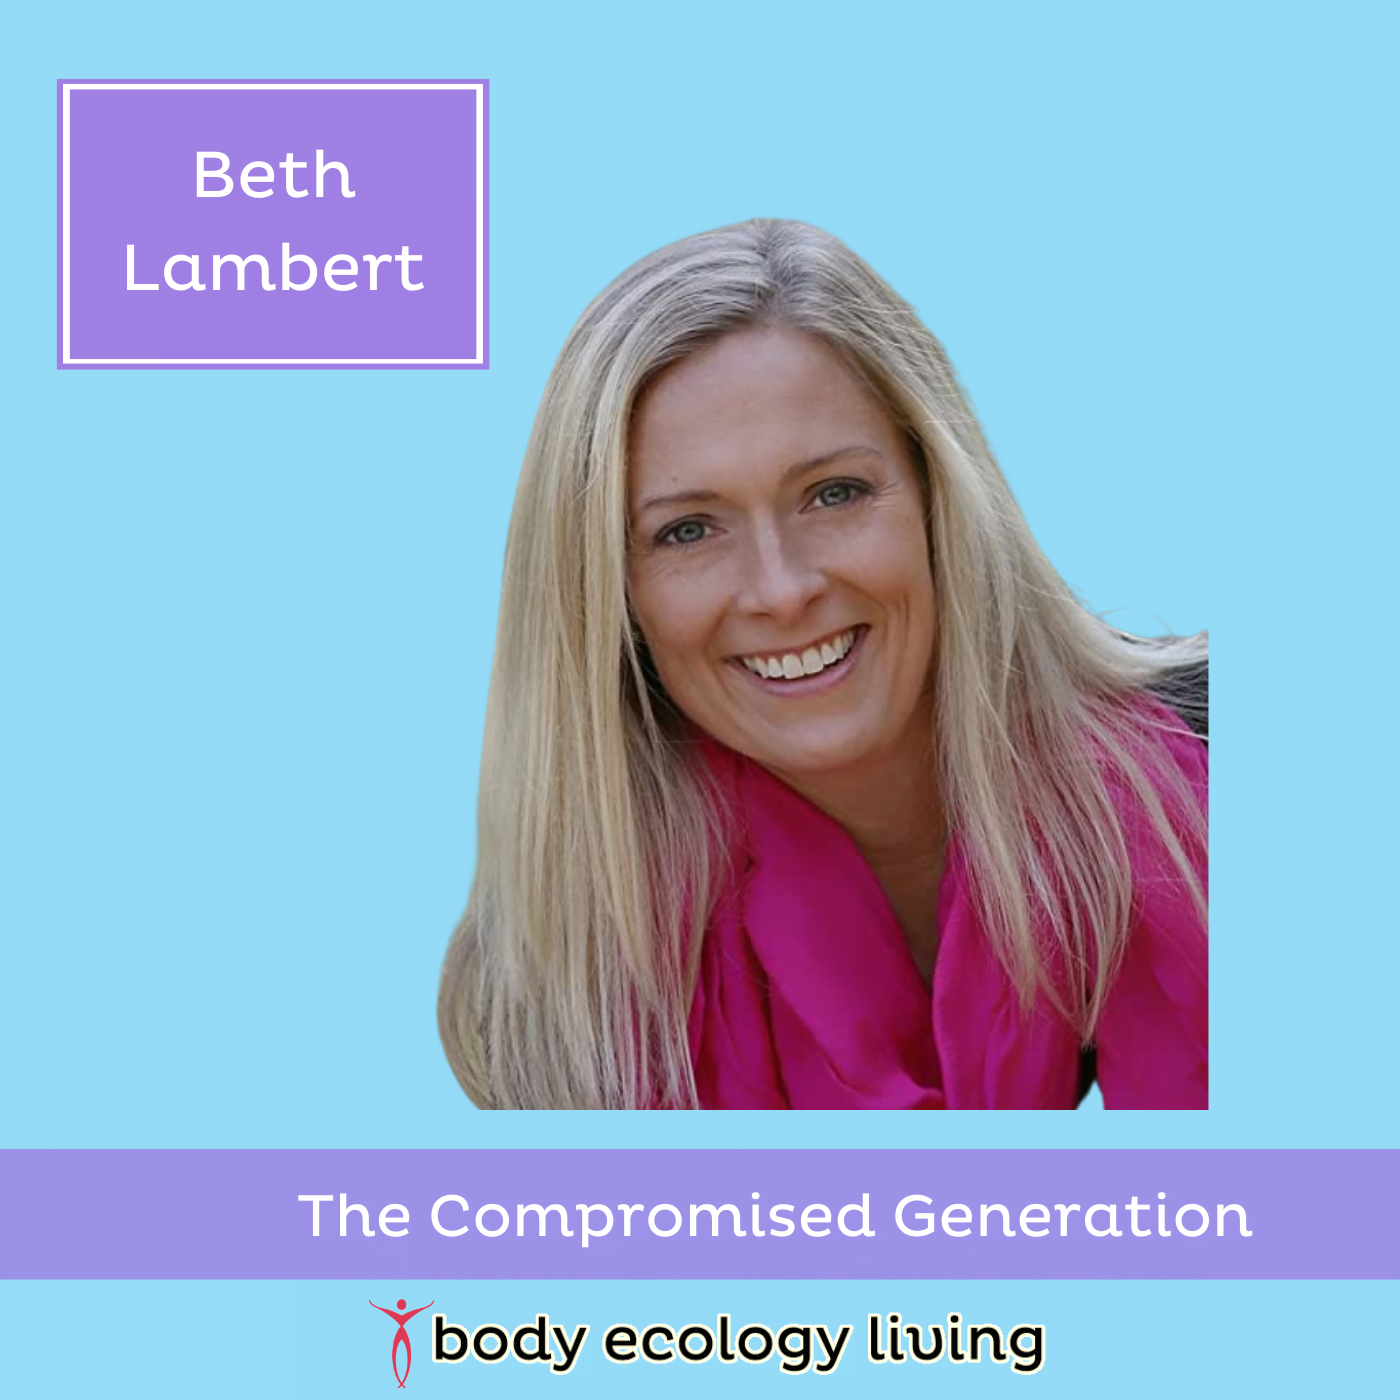 Beth Lambert